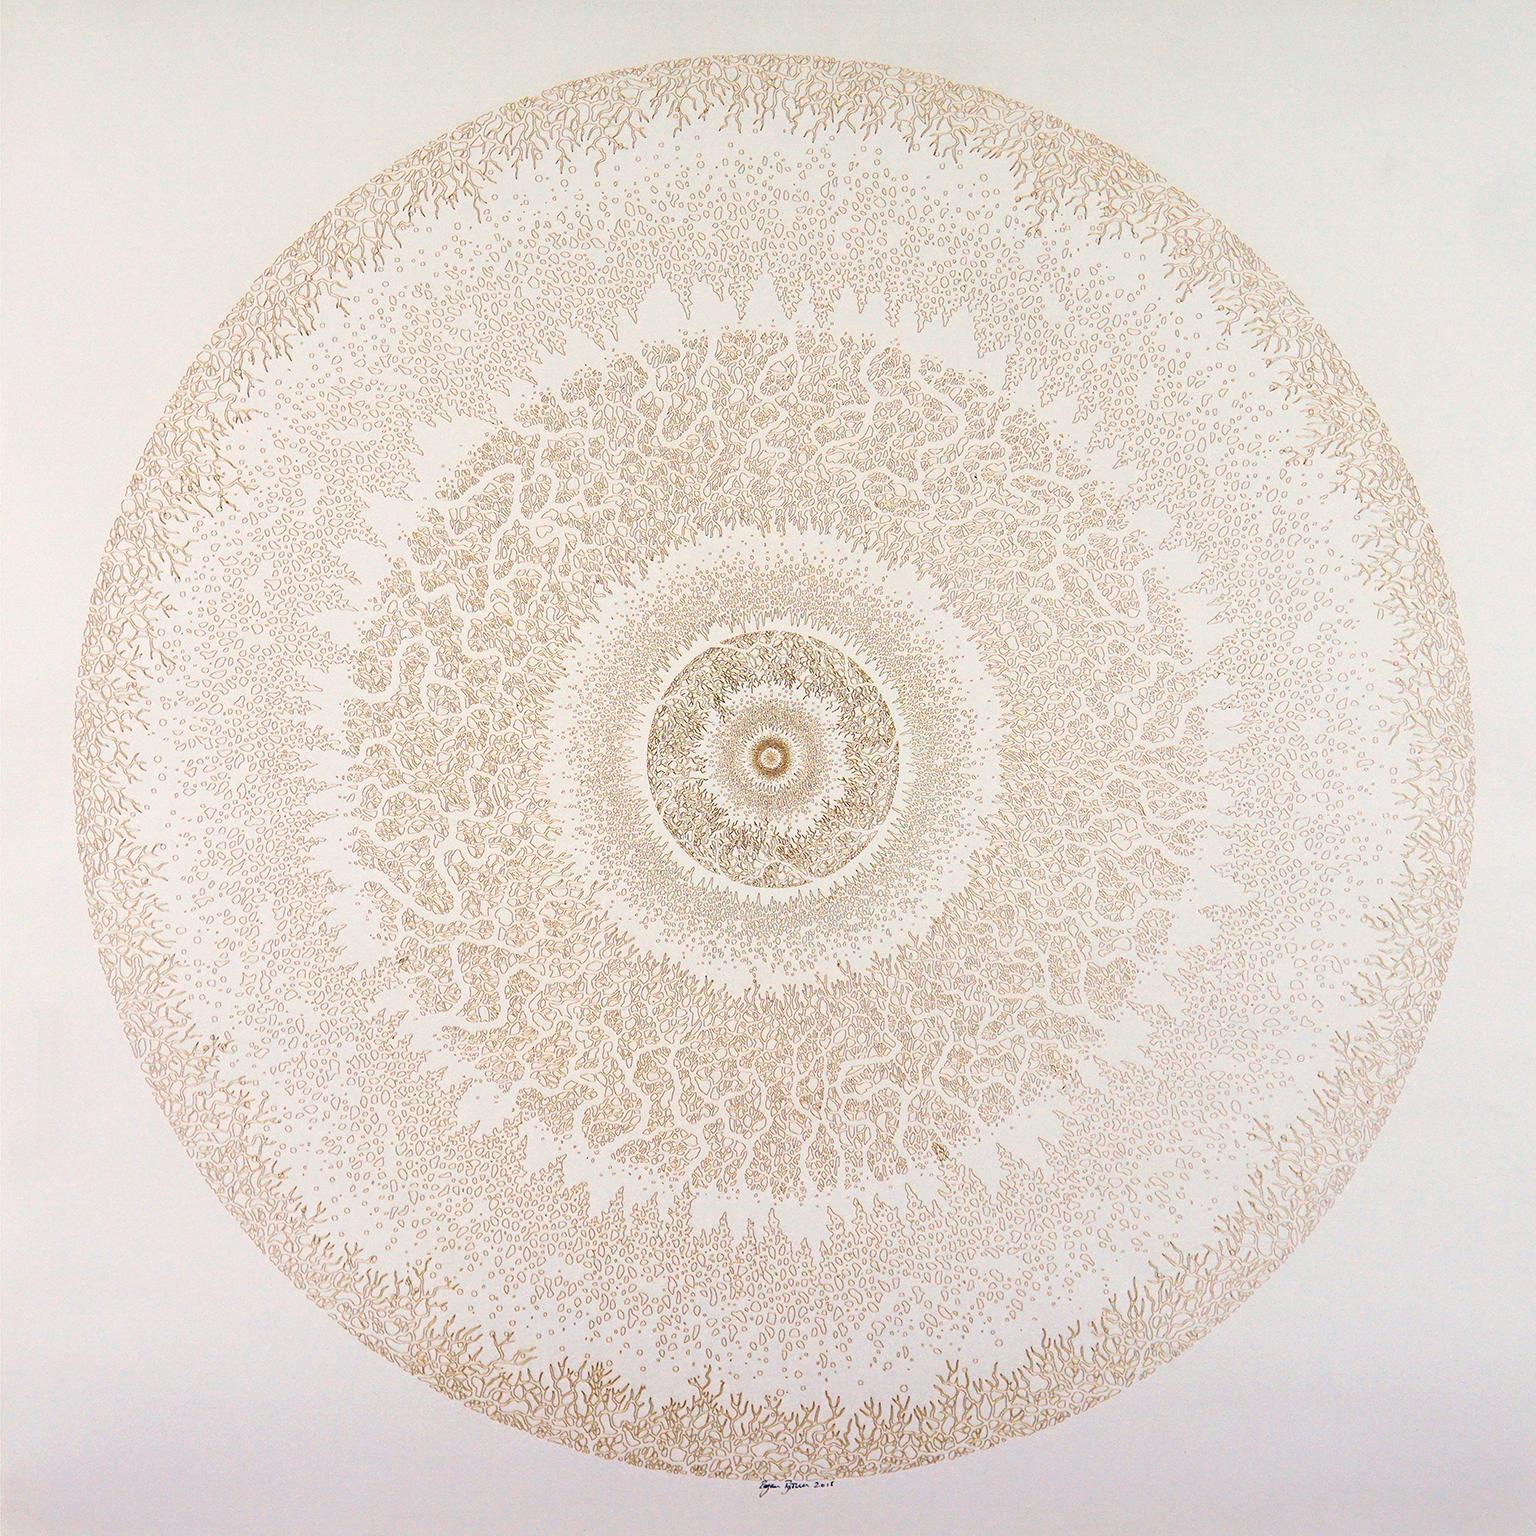 Rogan Brown Abstract Painting - Mandala Variations - Gold 2